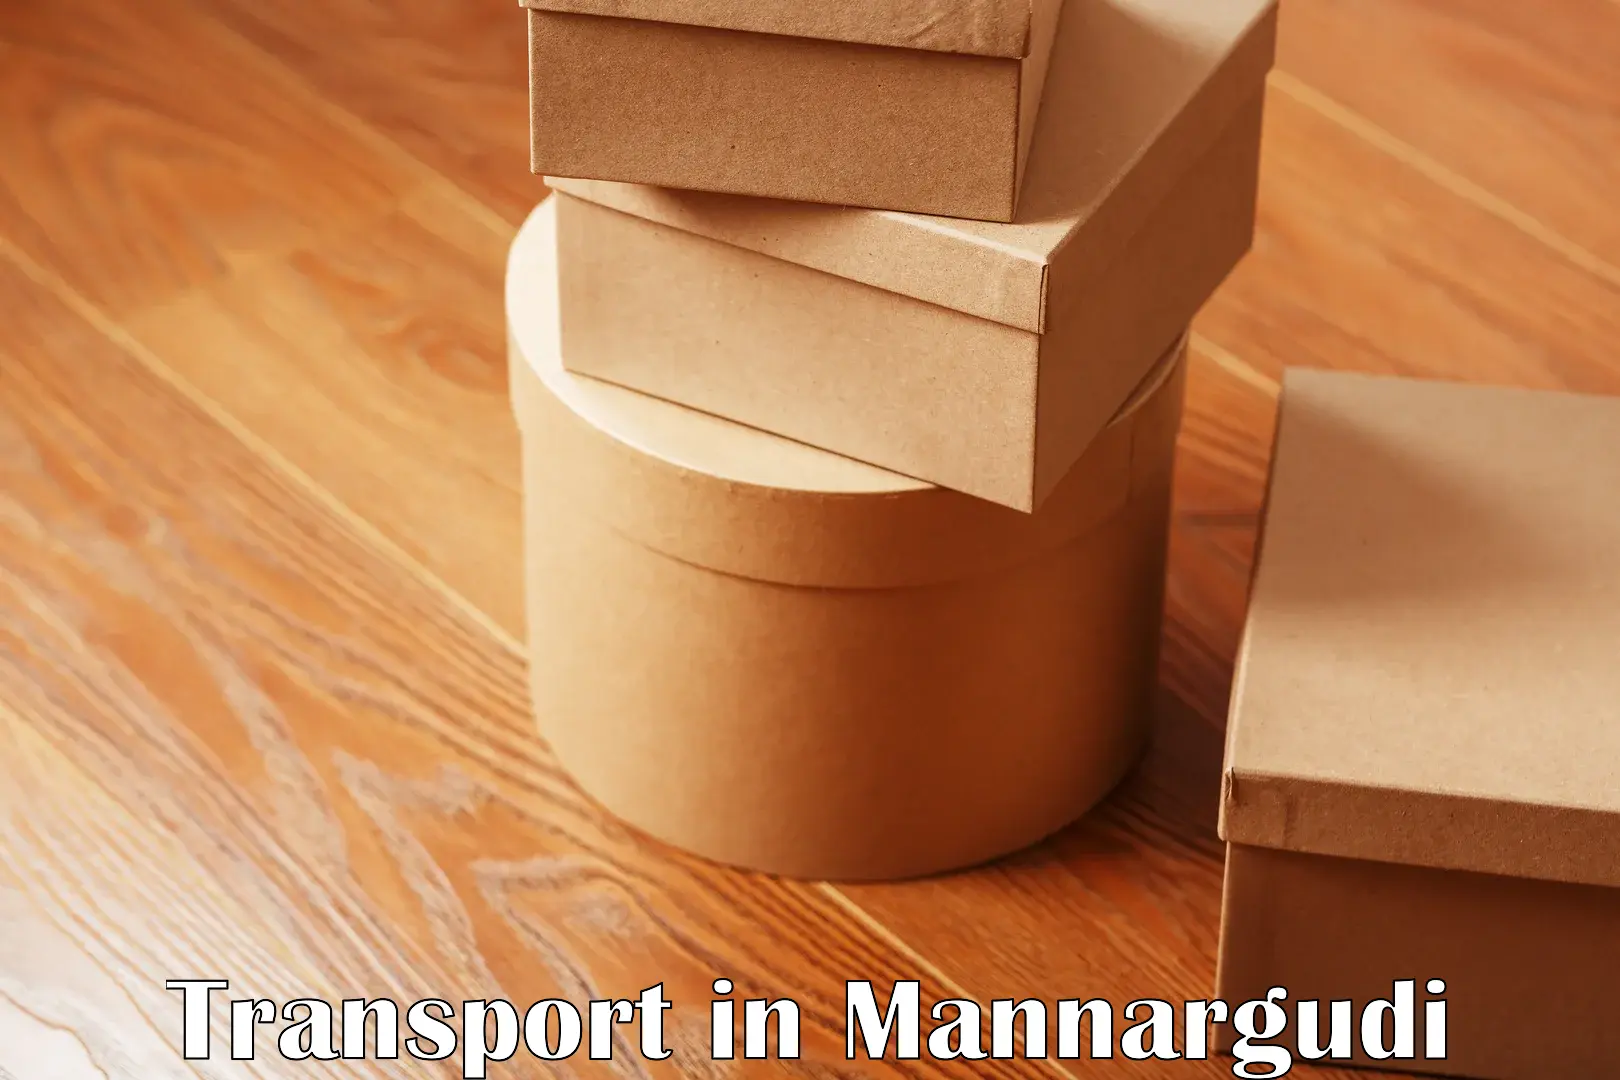 Nearest transport service in Mannargudi